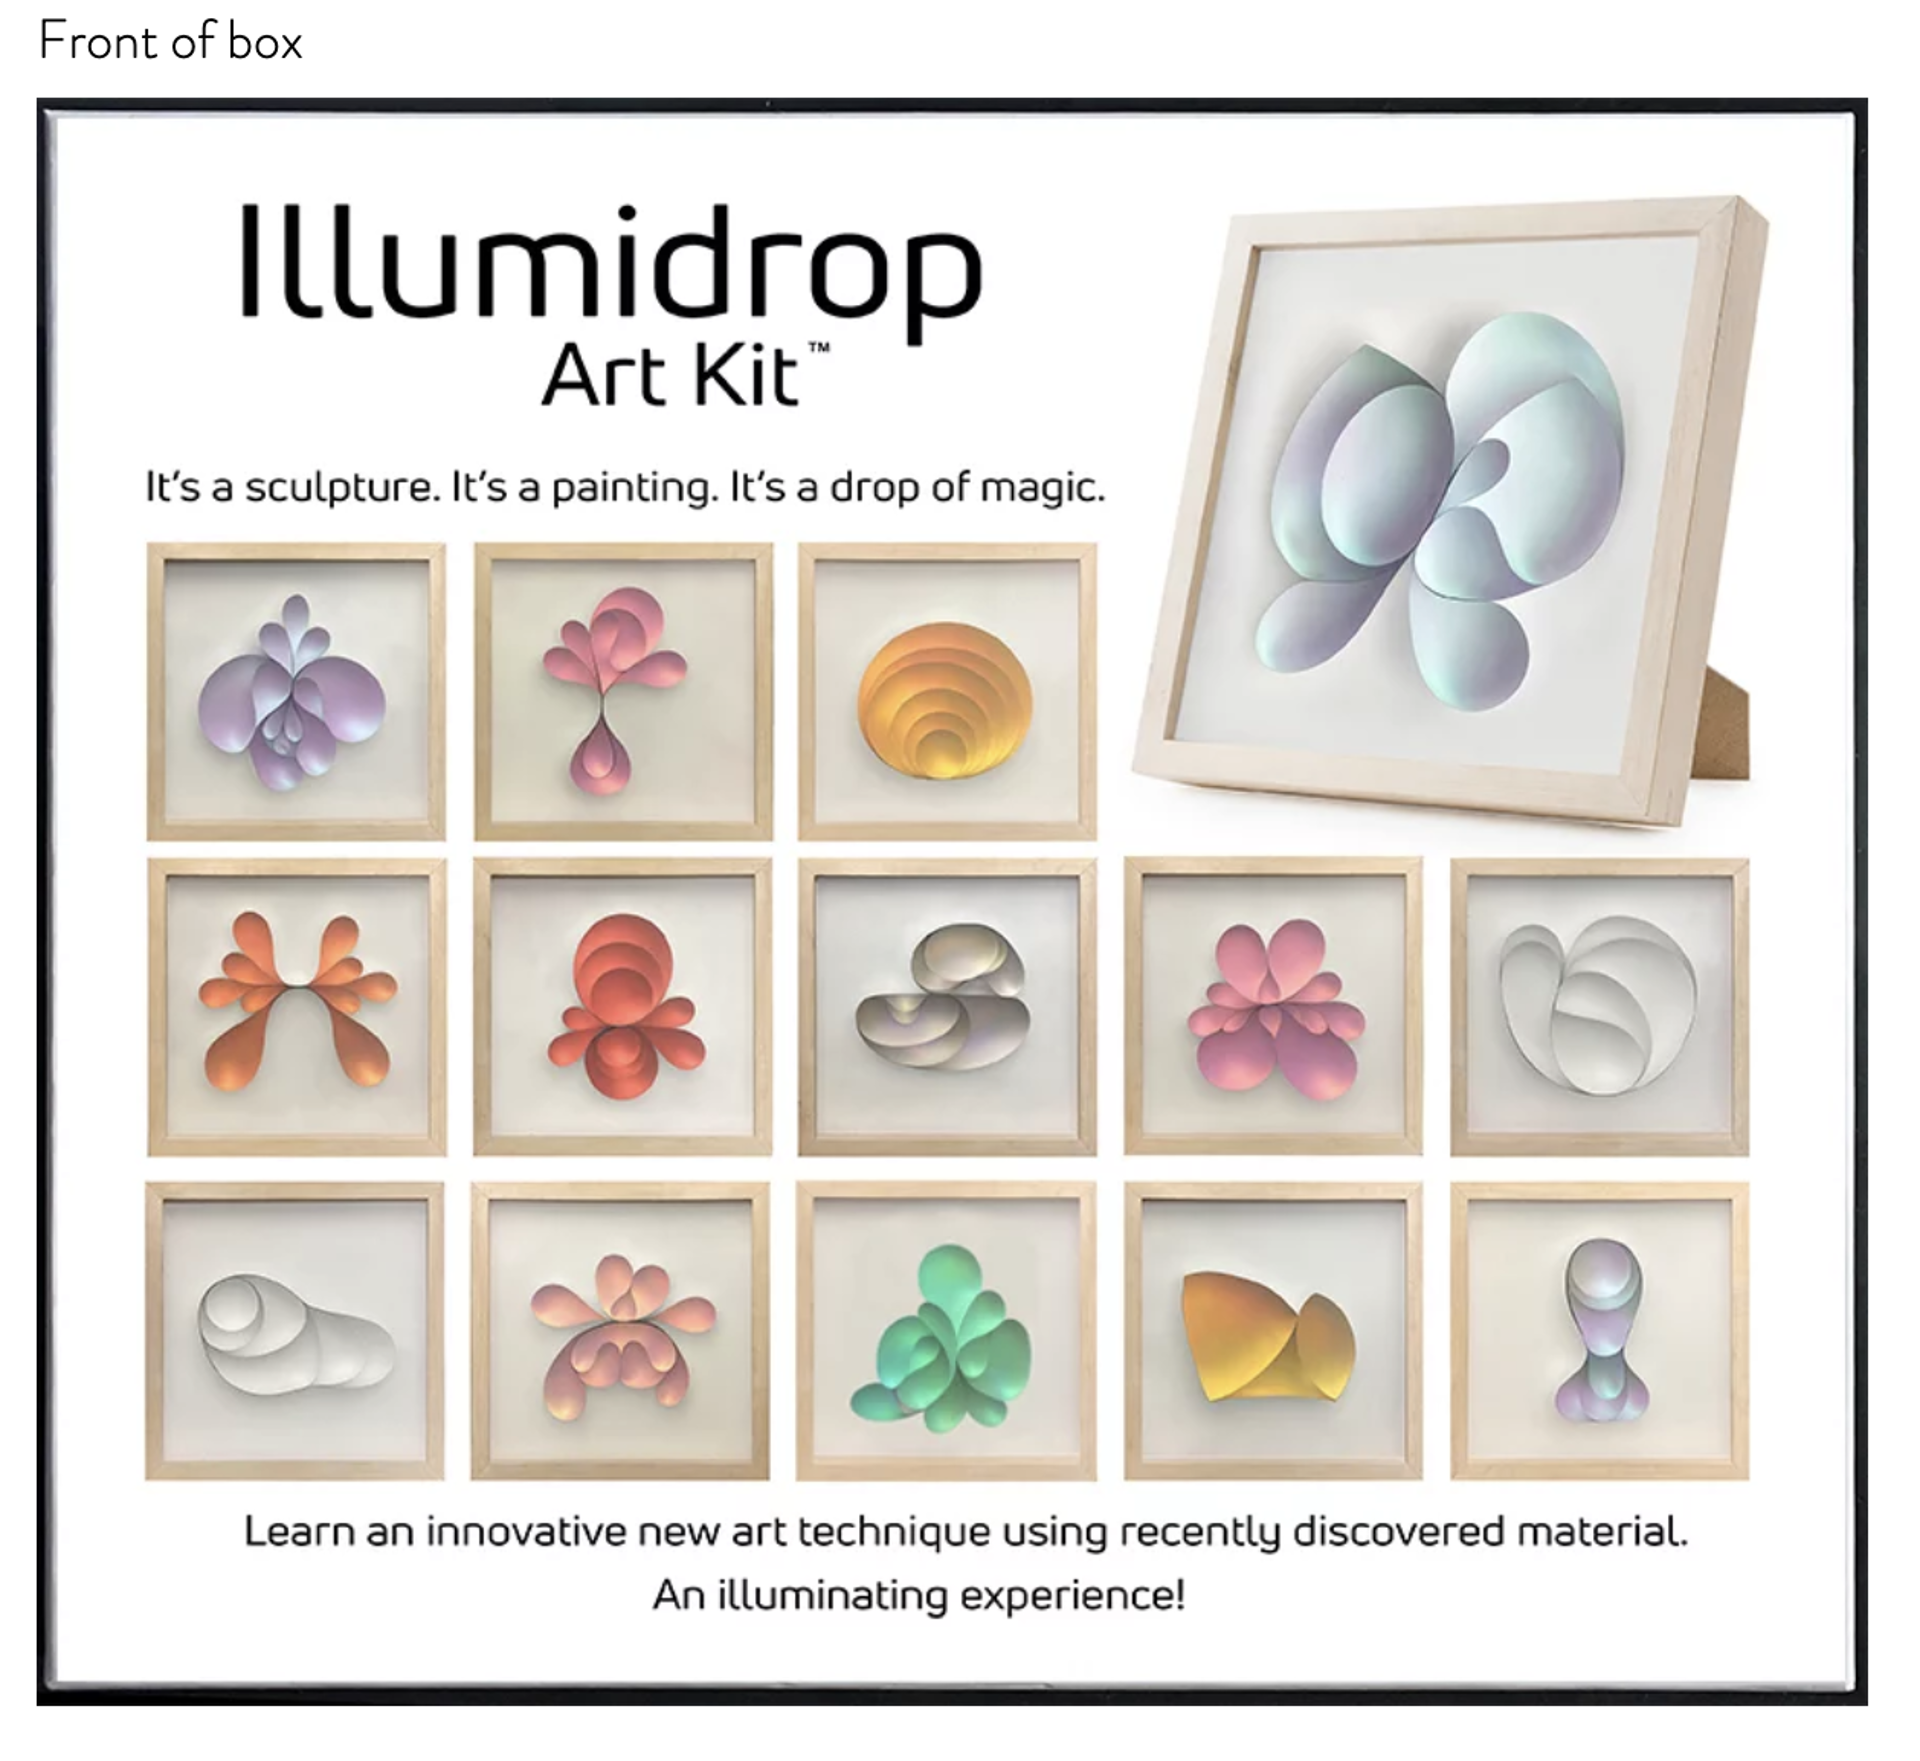 Illumidrop Art Kit 6 by Hunt Rettig